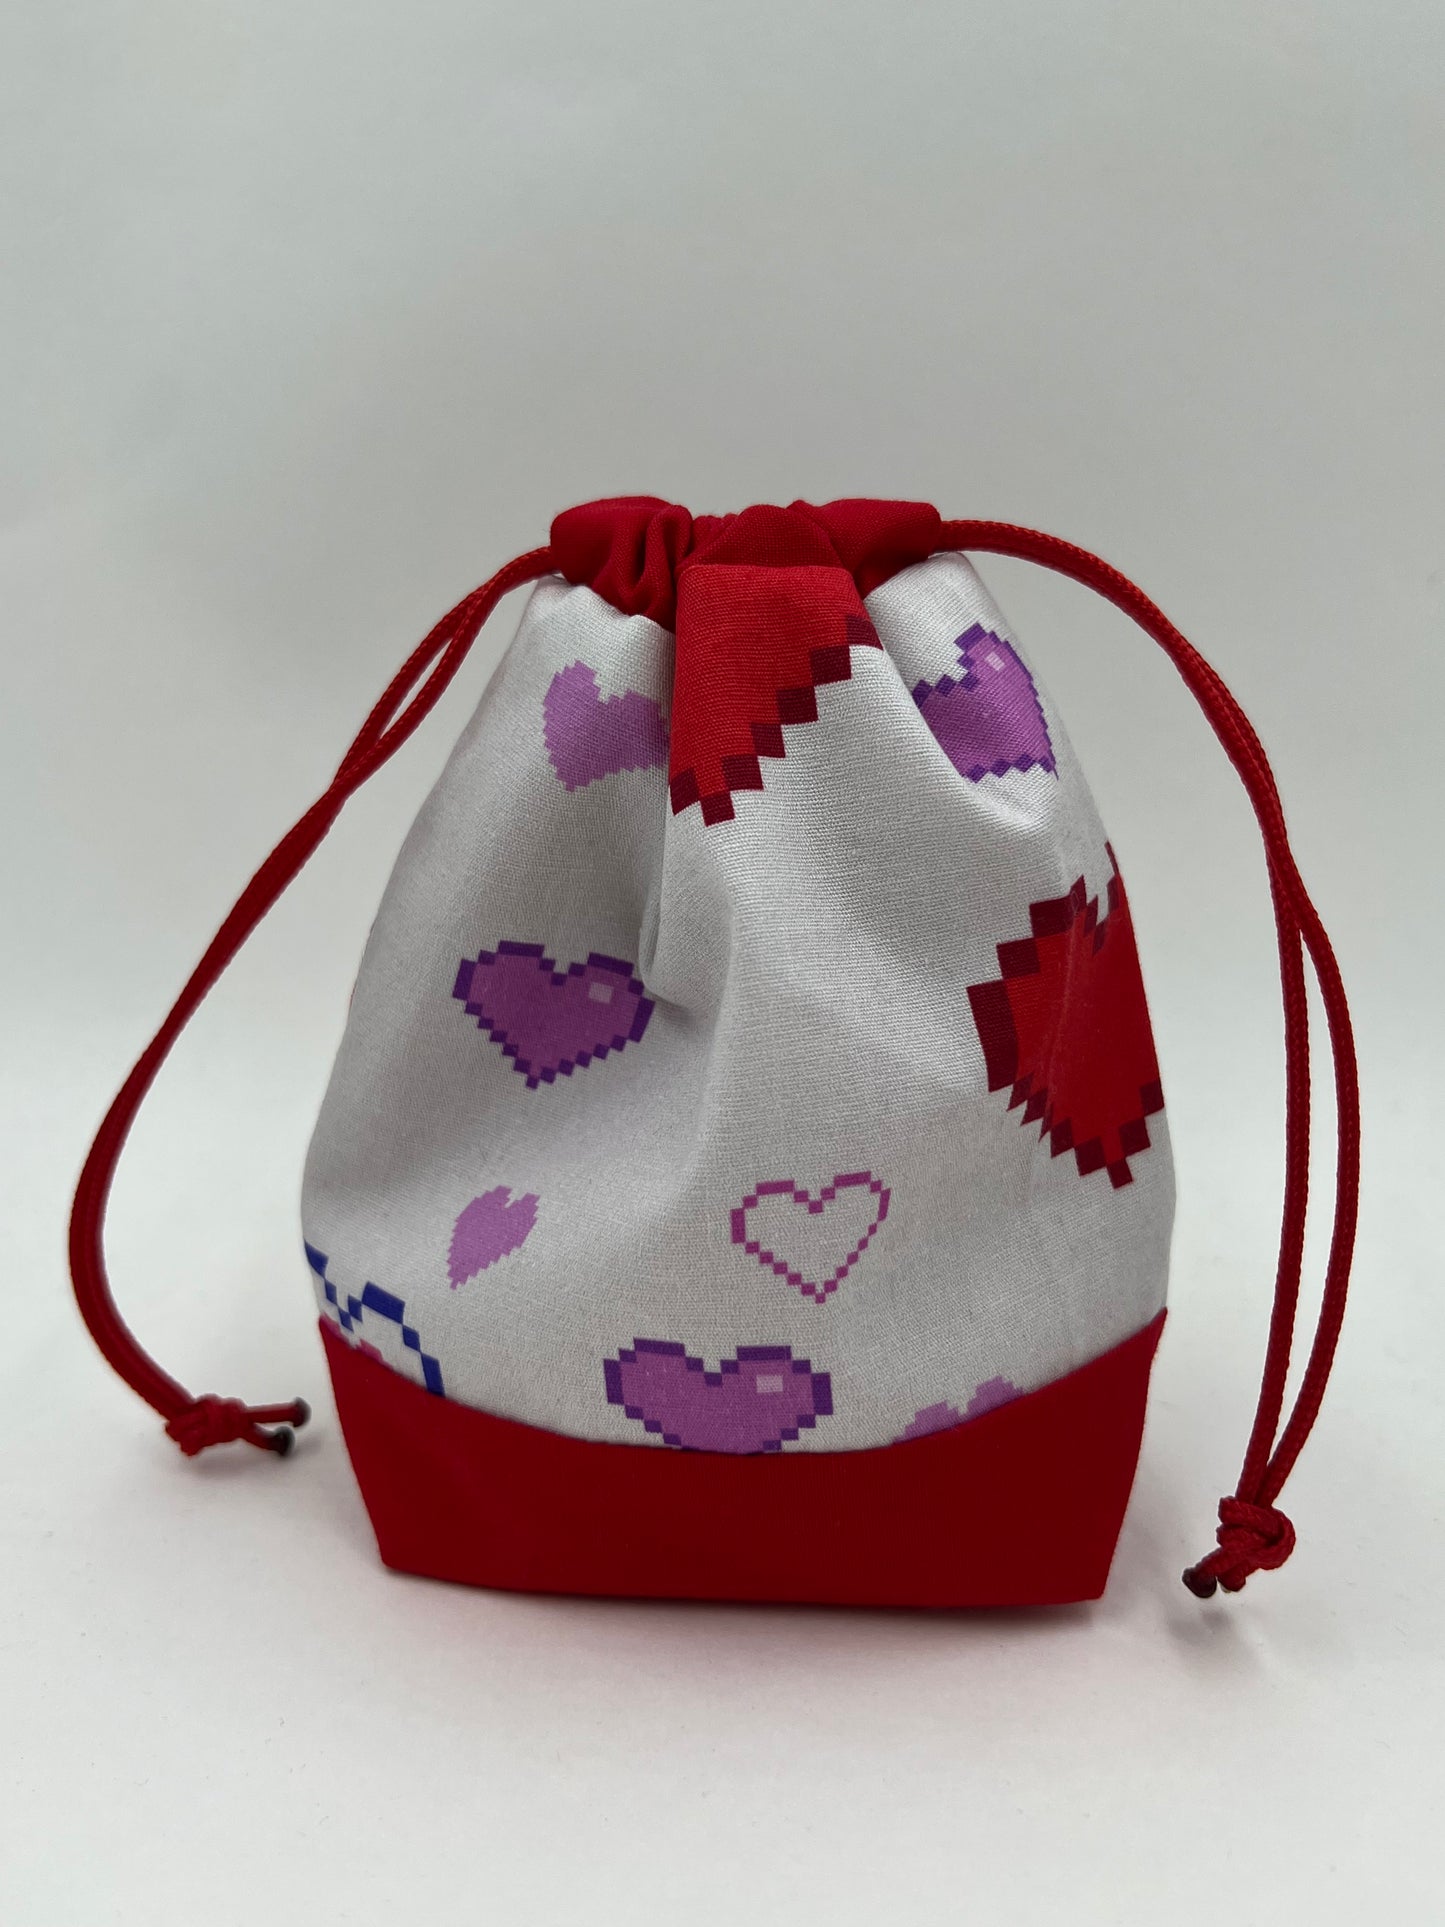 8-Bit Heart Small Bag